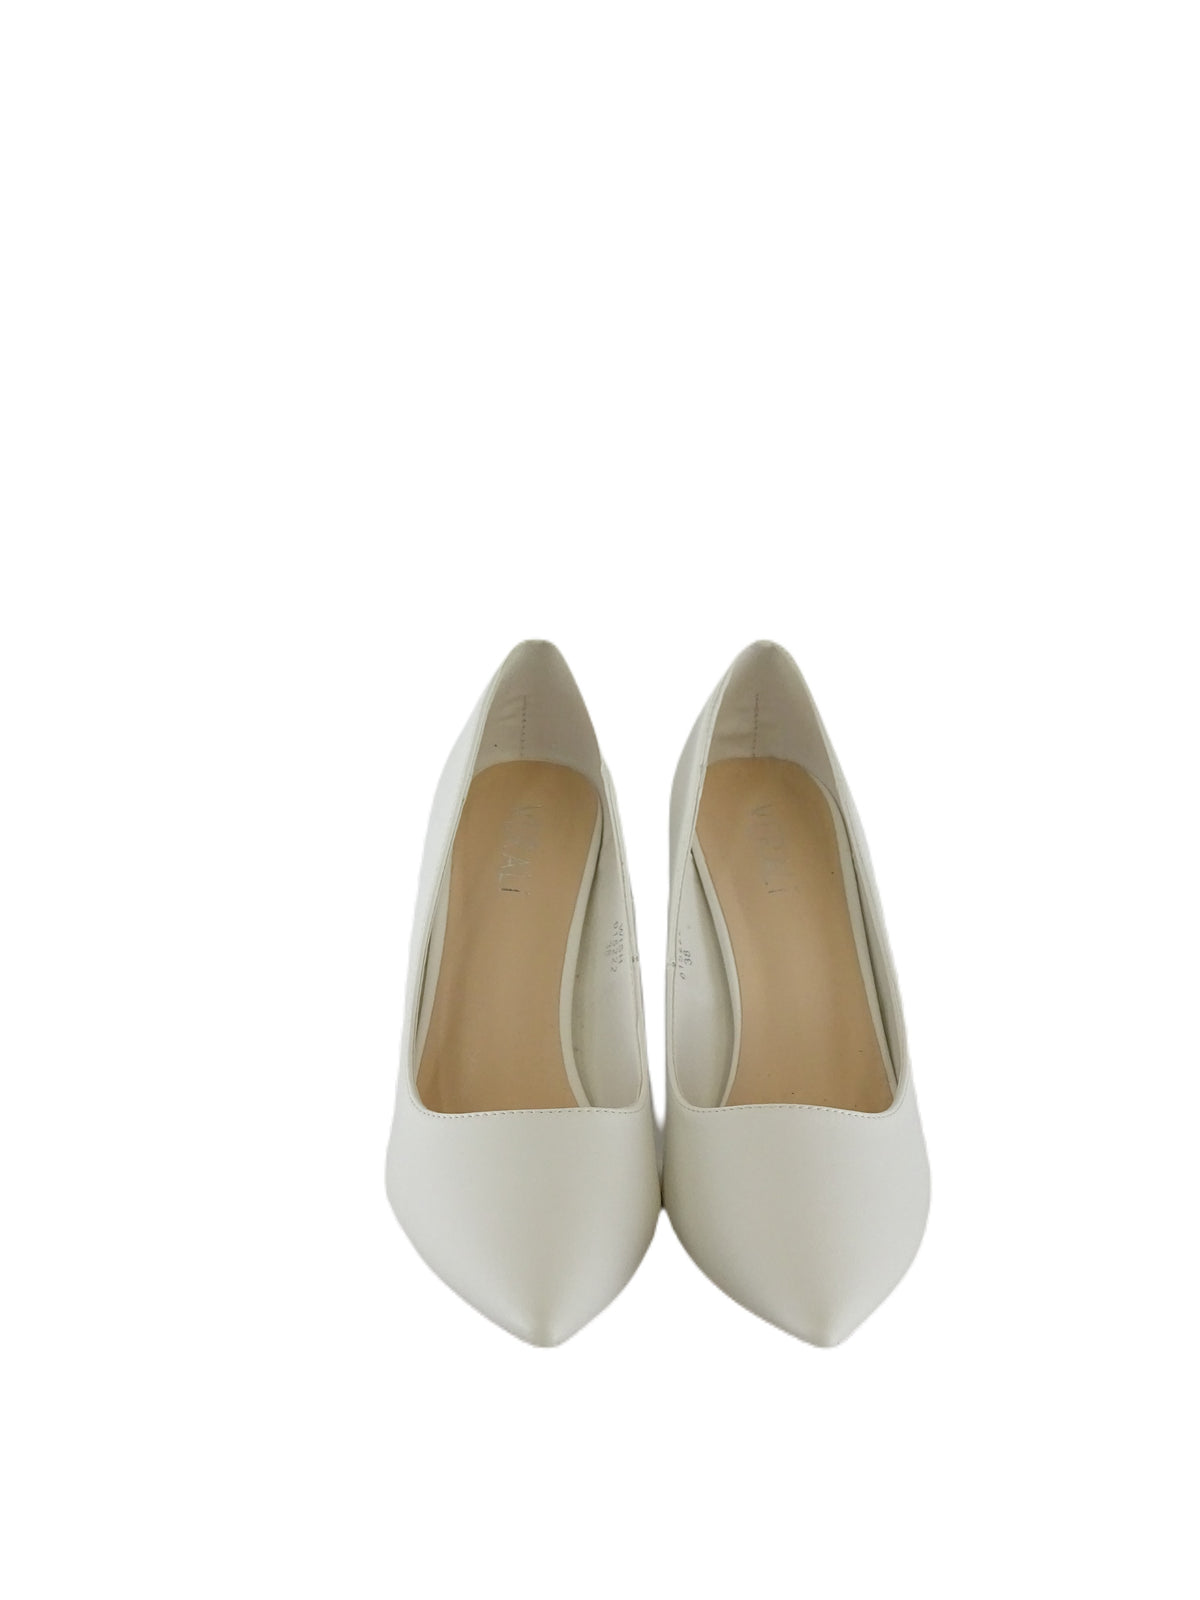 Verali White Stiletto Heels 38